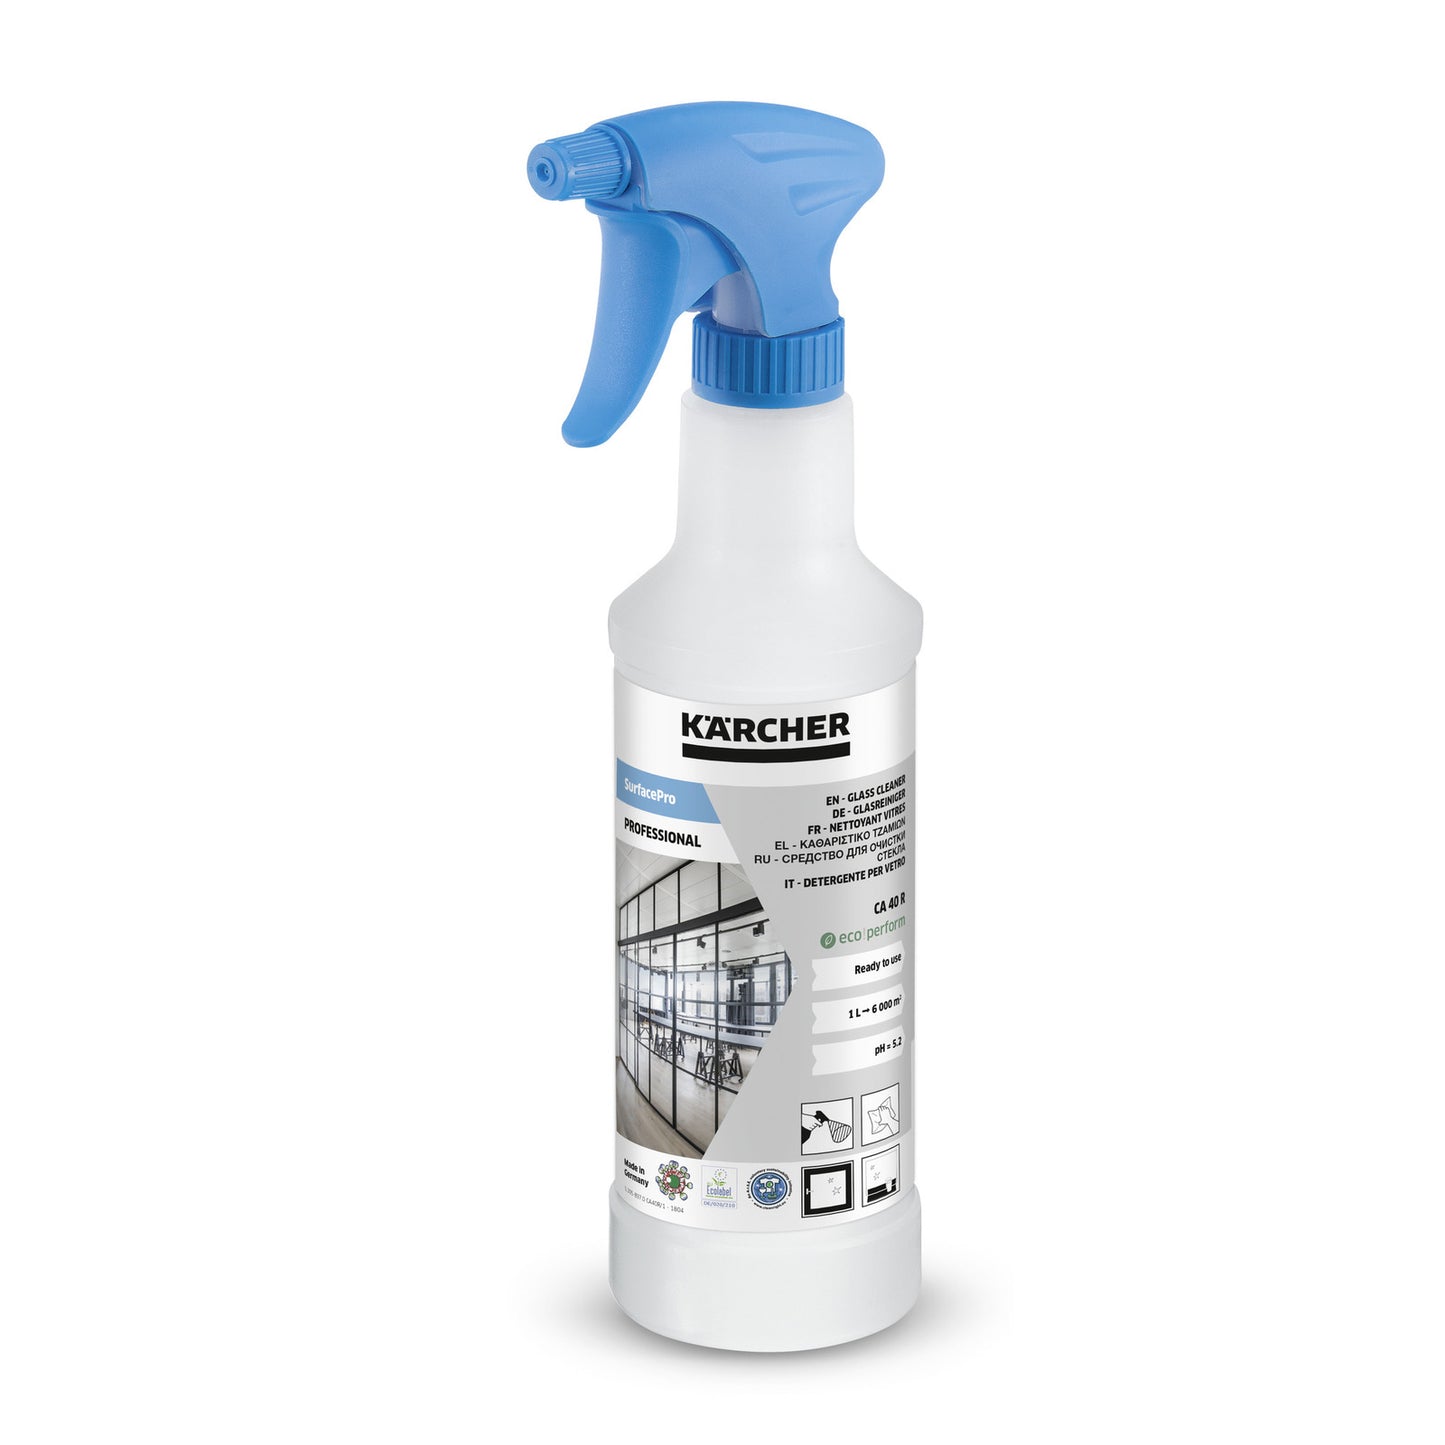 Detergente Karcher CA 40 R -0,5L, Var. 1